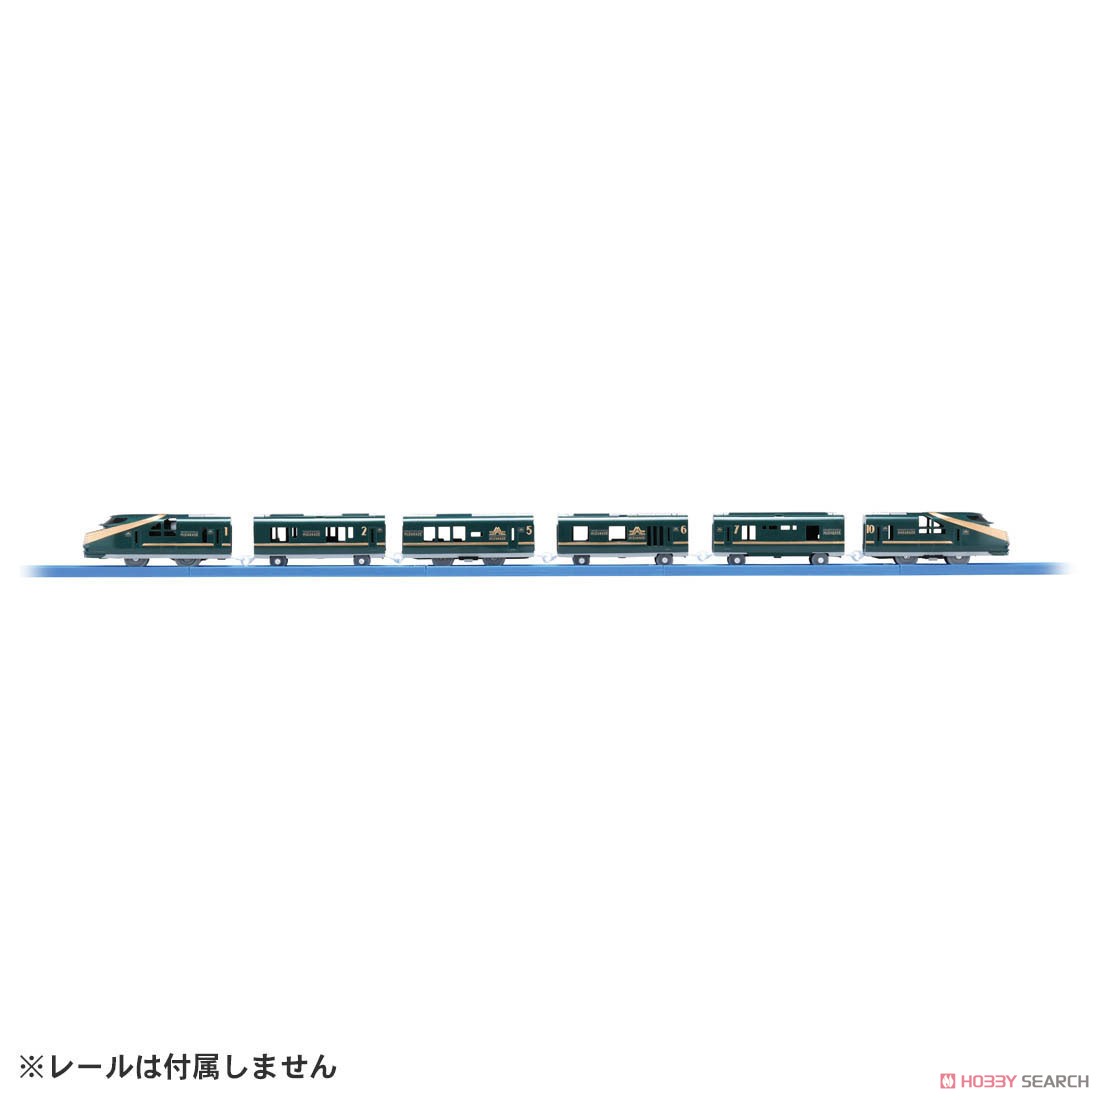 クルーズトレインDXシリーズ TWILIGHT EXPRESS 瑞風 (プラレール) 商品画像2